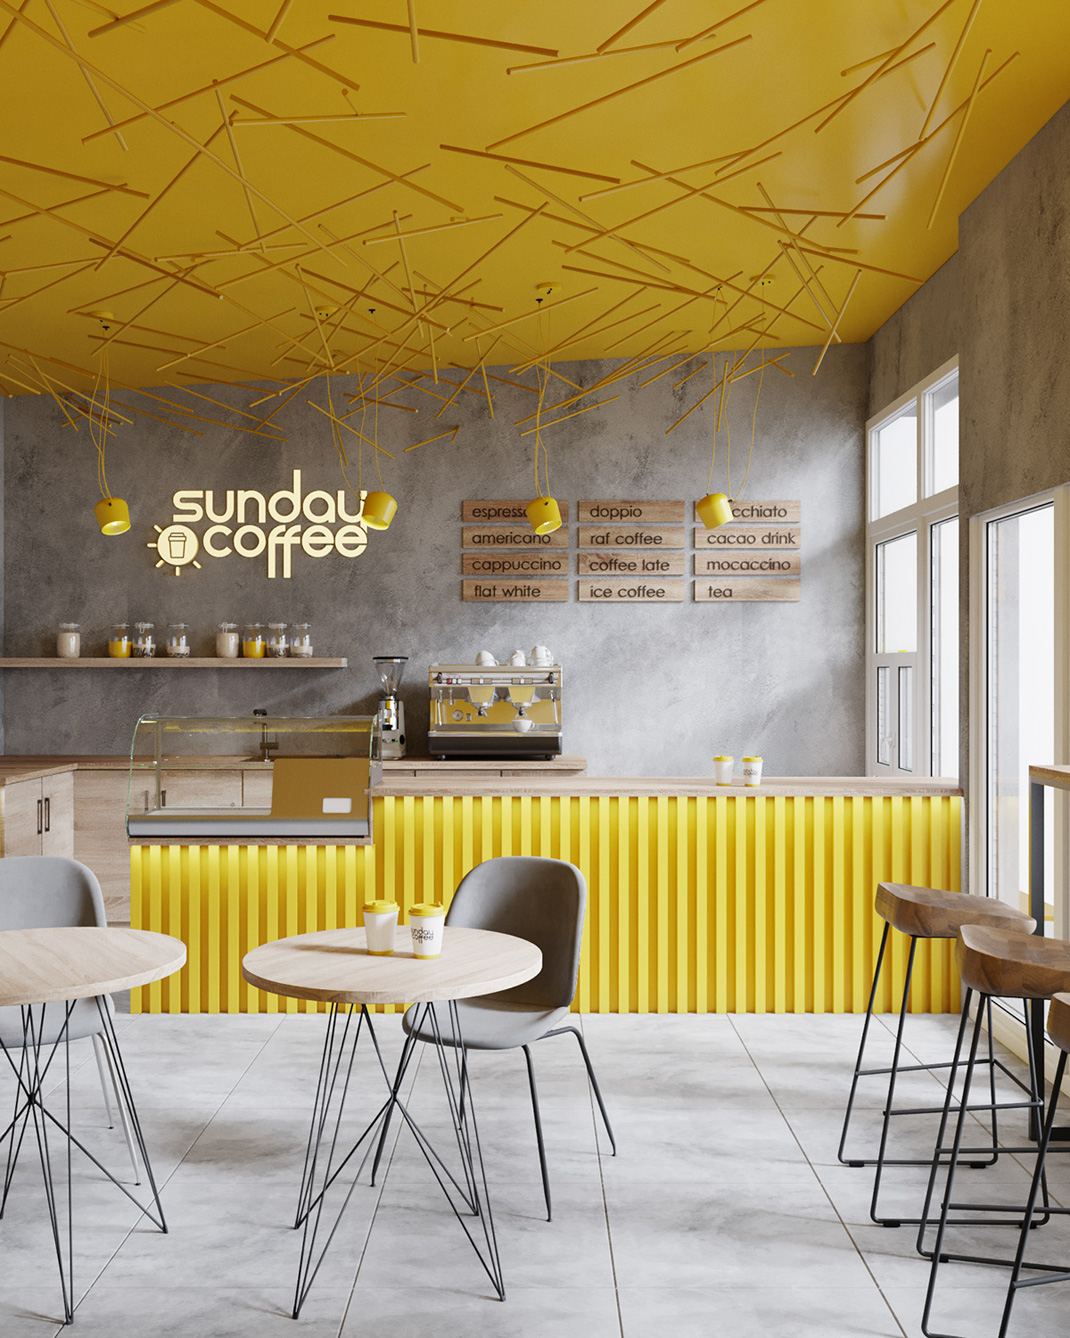 星期日咖啡馆 乌克兰 咖啡馆 黄色 logo设计 vi设计 空间设计